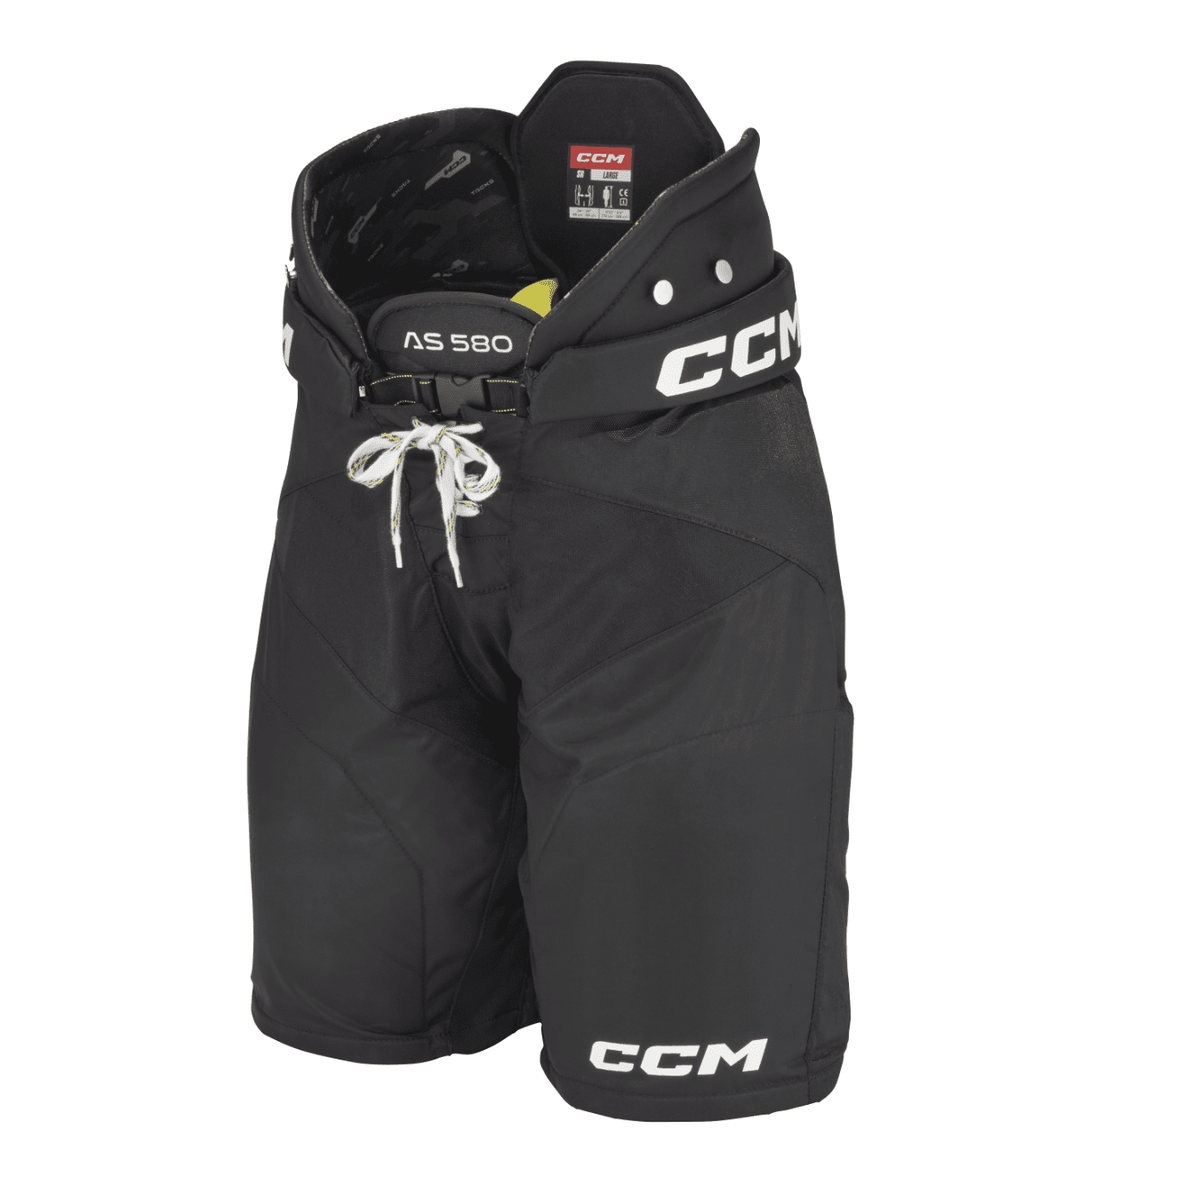 CCM Tacks AS 580 Ice Hockey Shorts